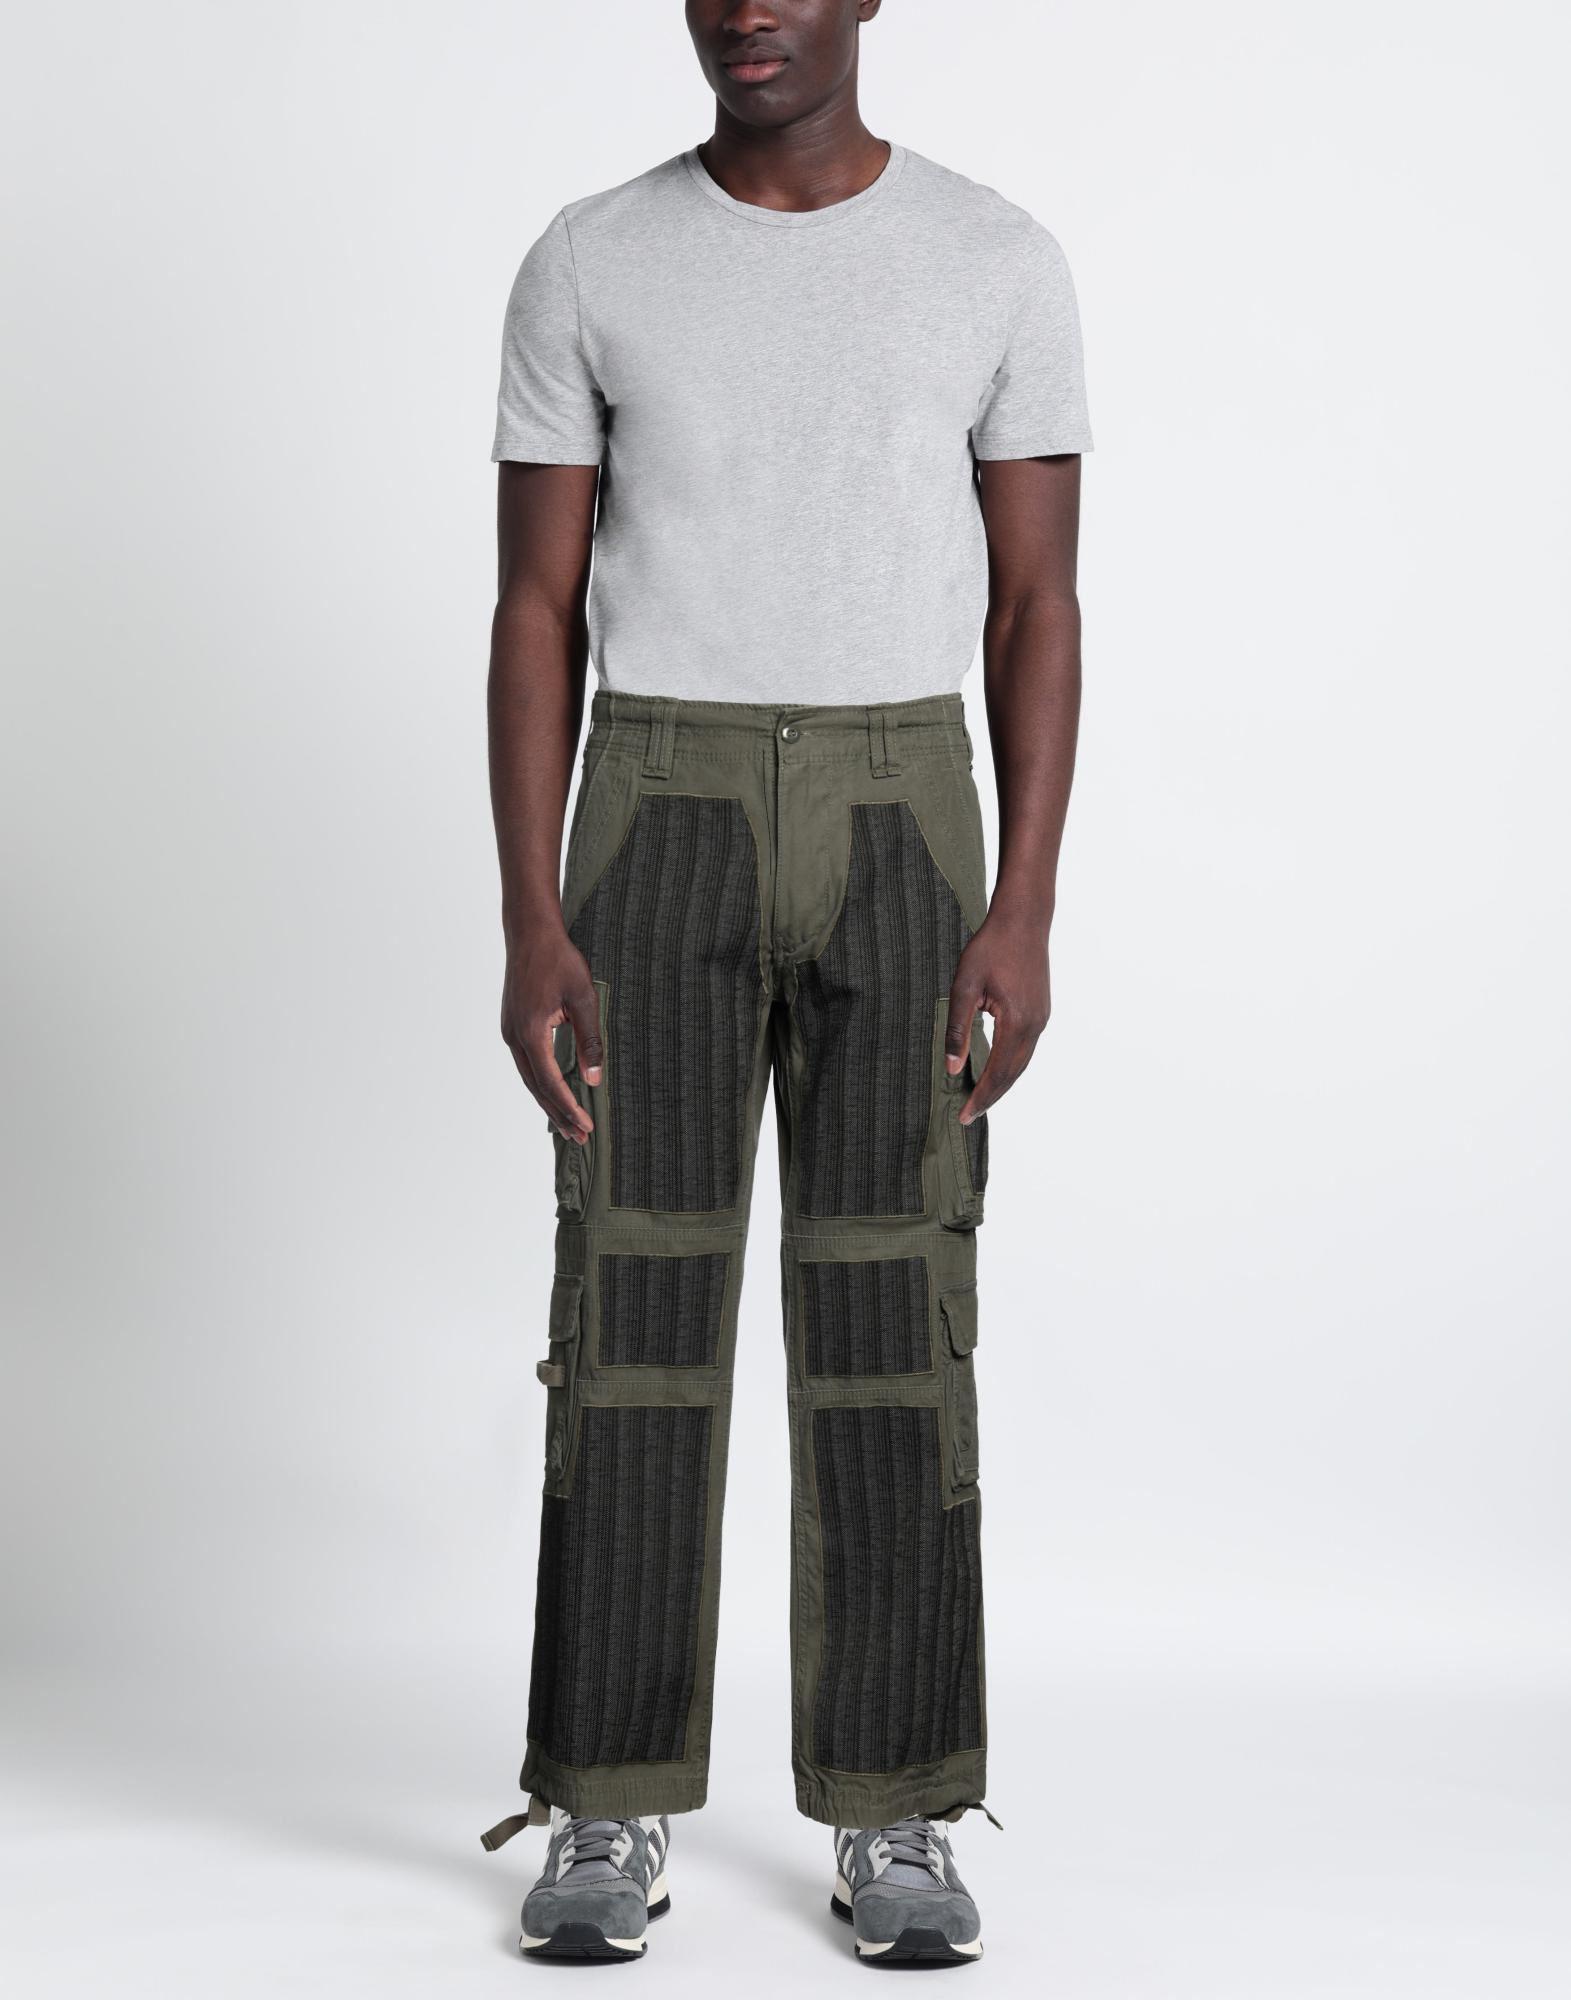 Maharishi Black Wool Boro Cargo Pants Trackpants | ModeSens | Cargo pants,  Pants, Track pants